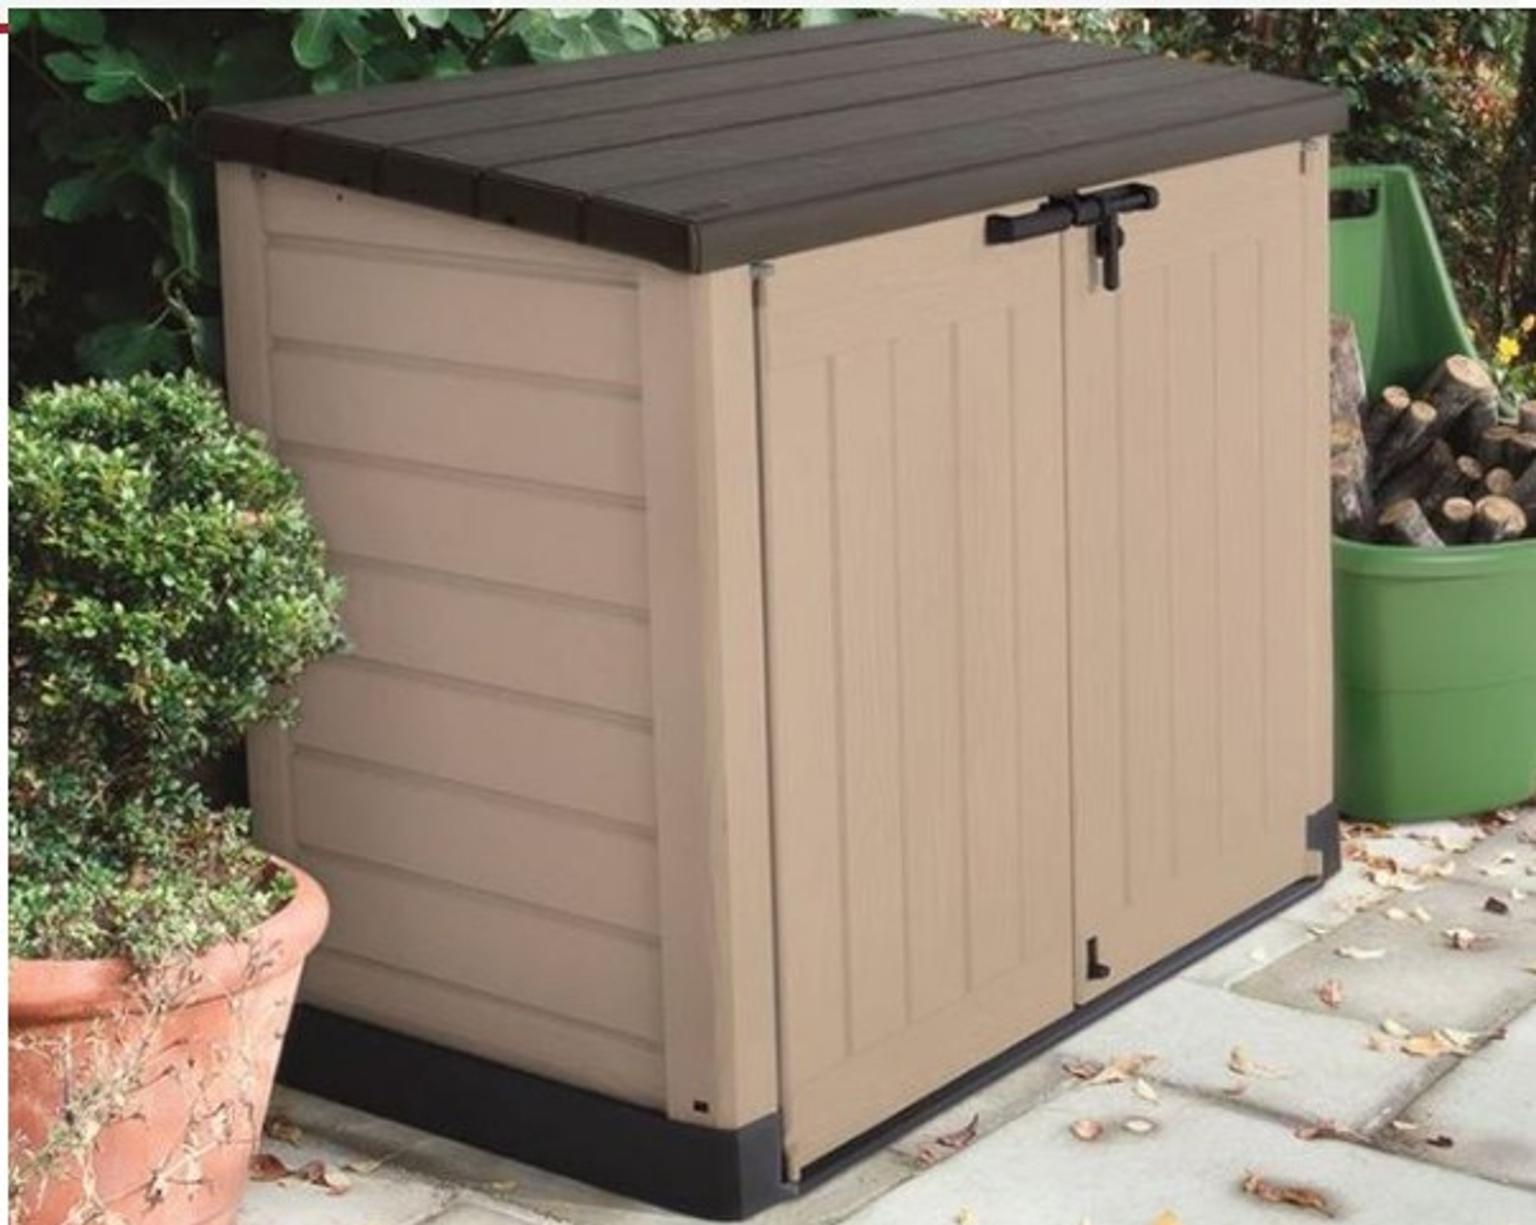 Diy Garden Bench Ideas Free Plans For Outdoor Benches Garden Storage Bench Wickes